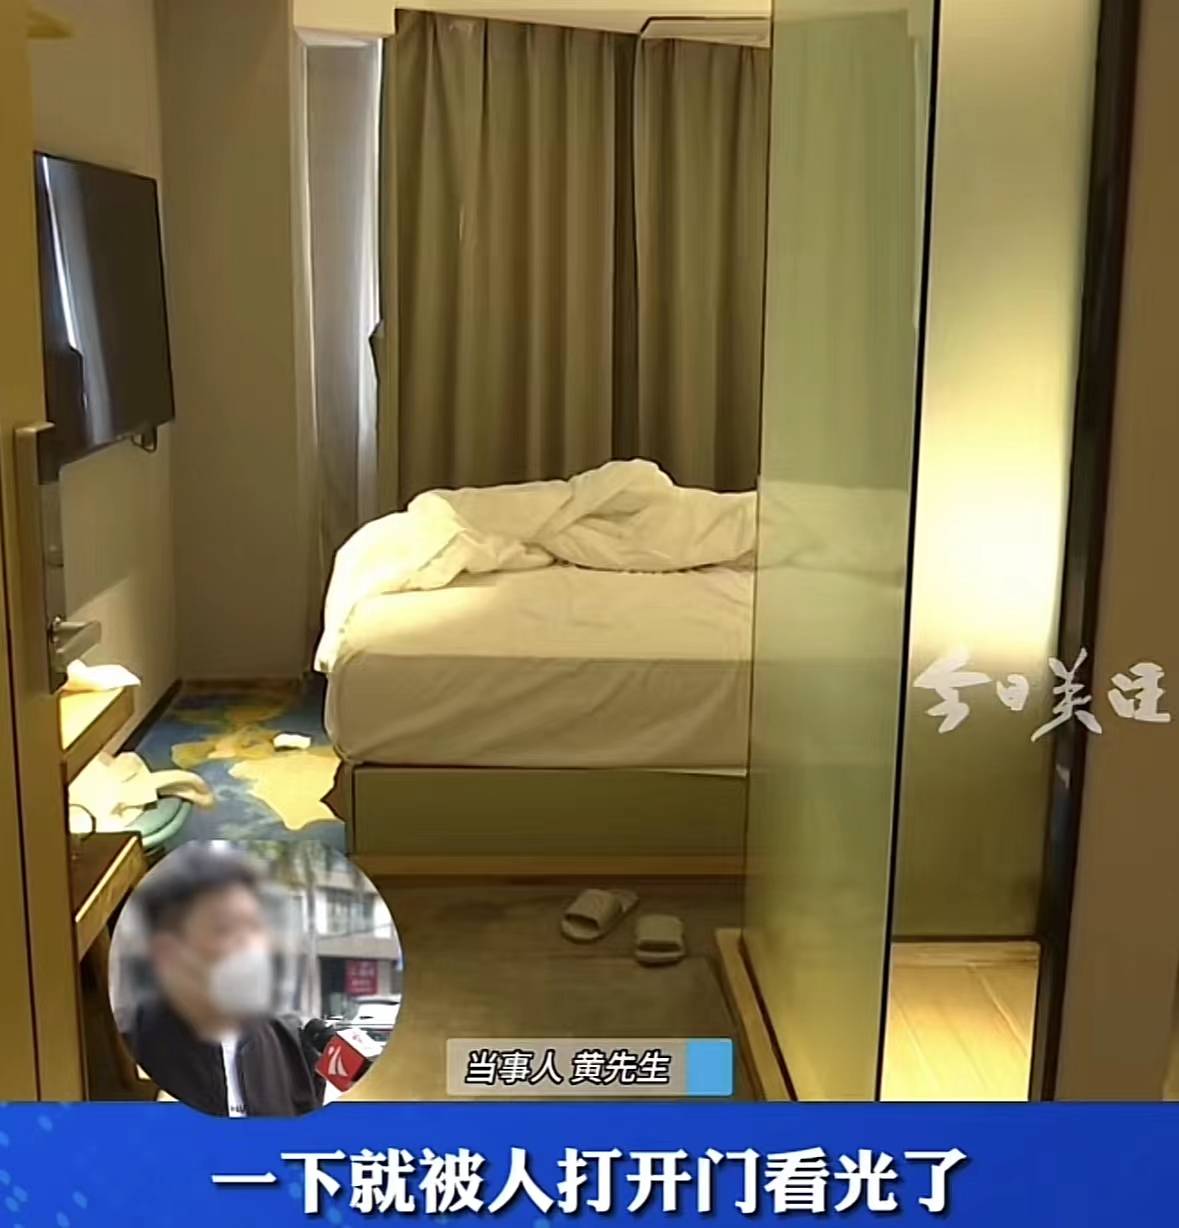 深圳一对情侣赤身时房门遭酒店保洁打开,律师解读